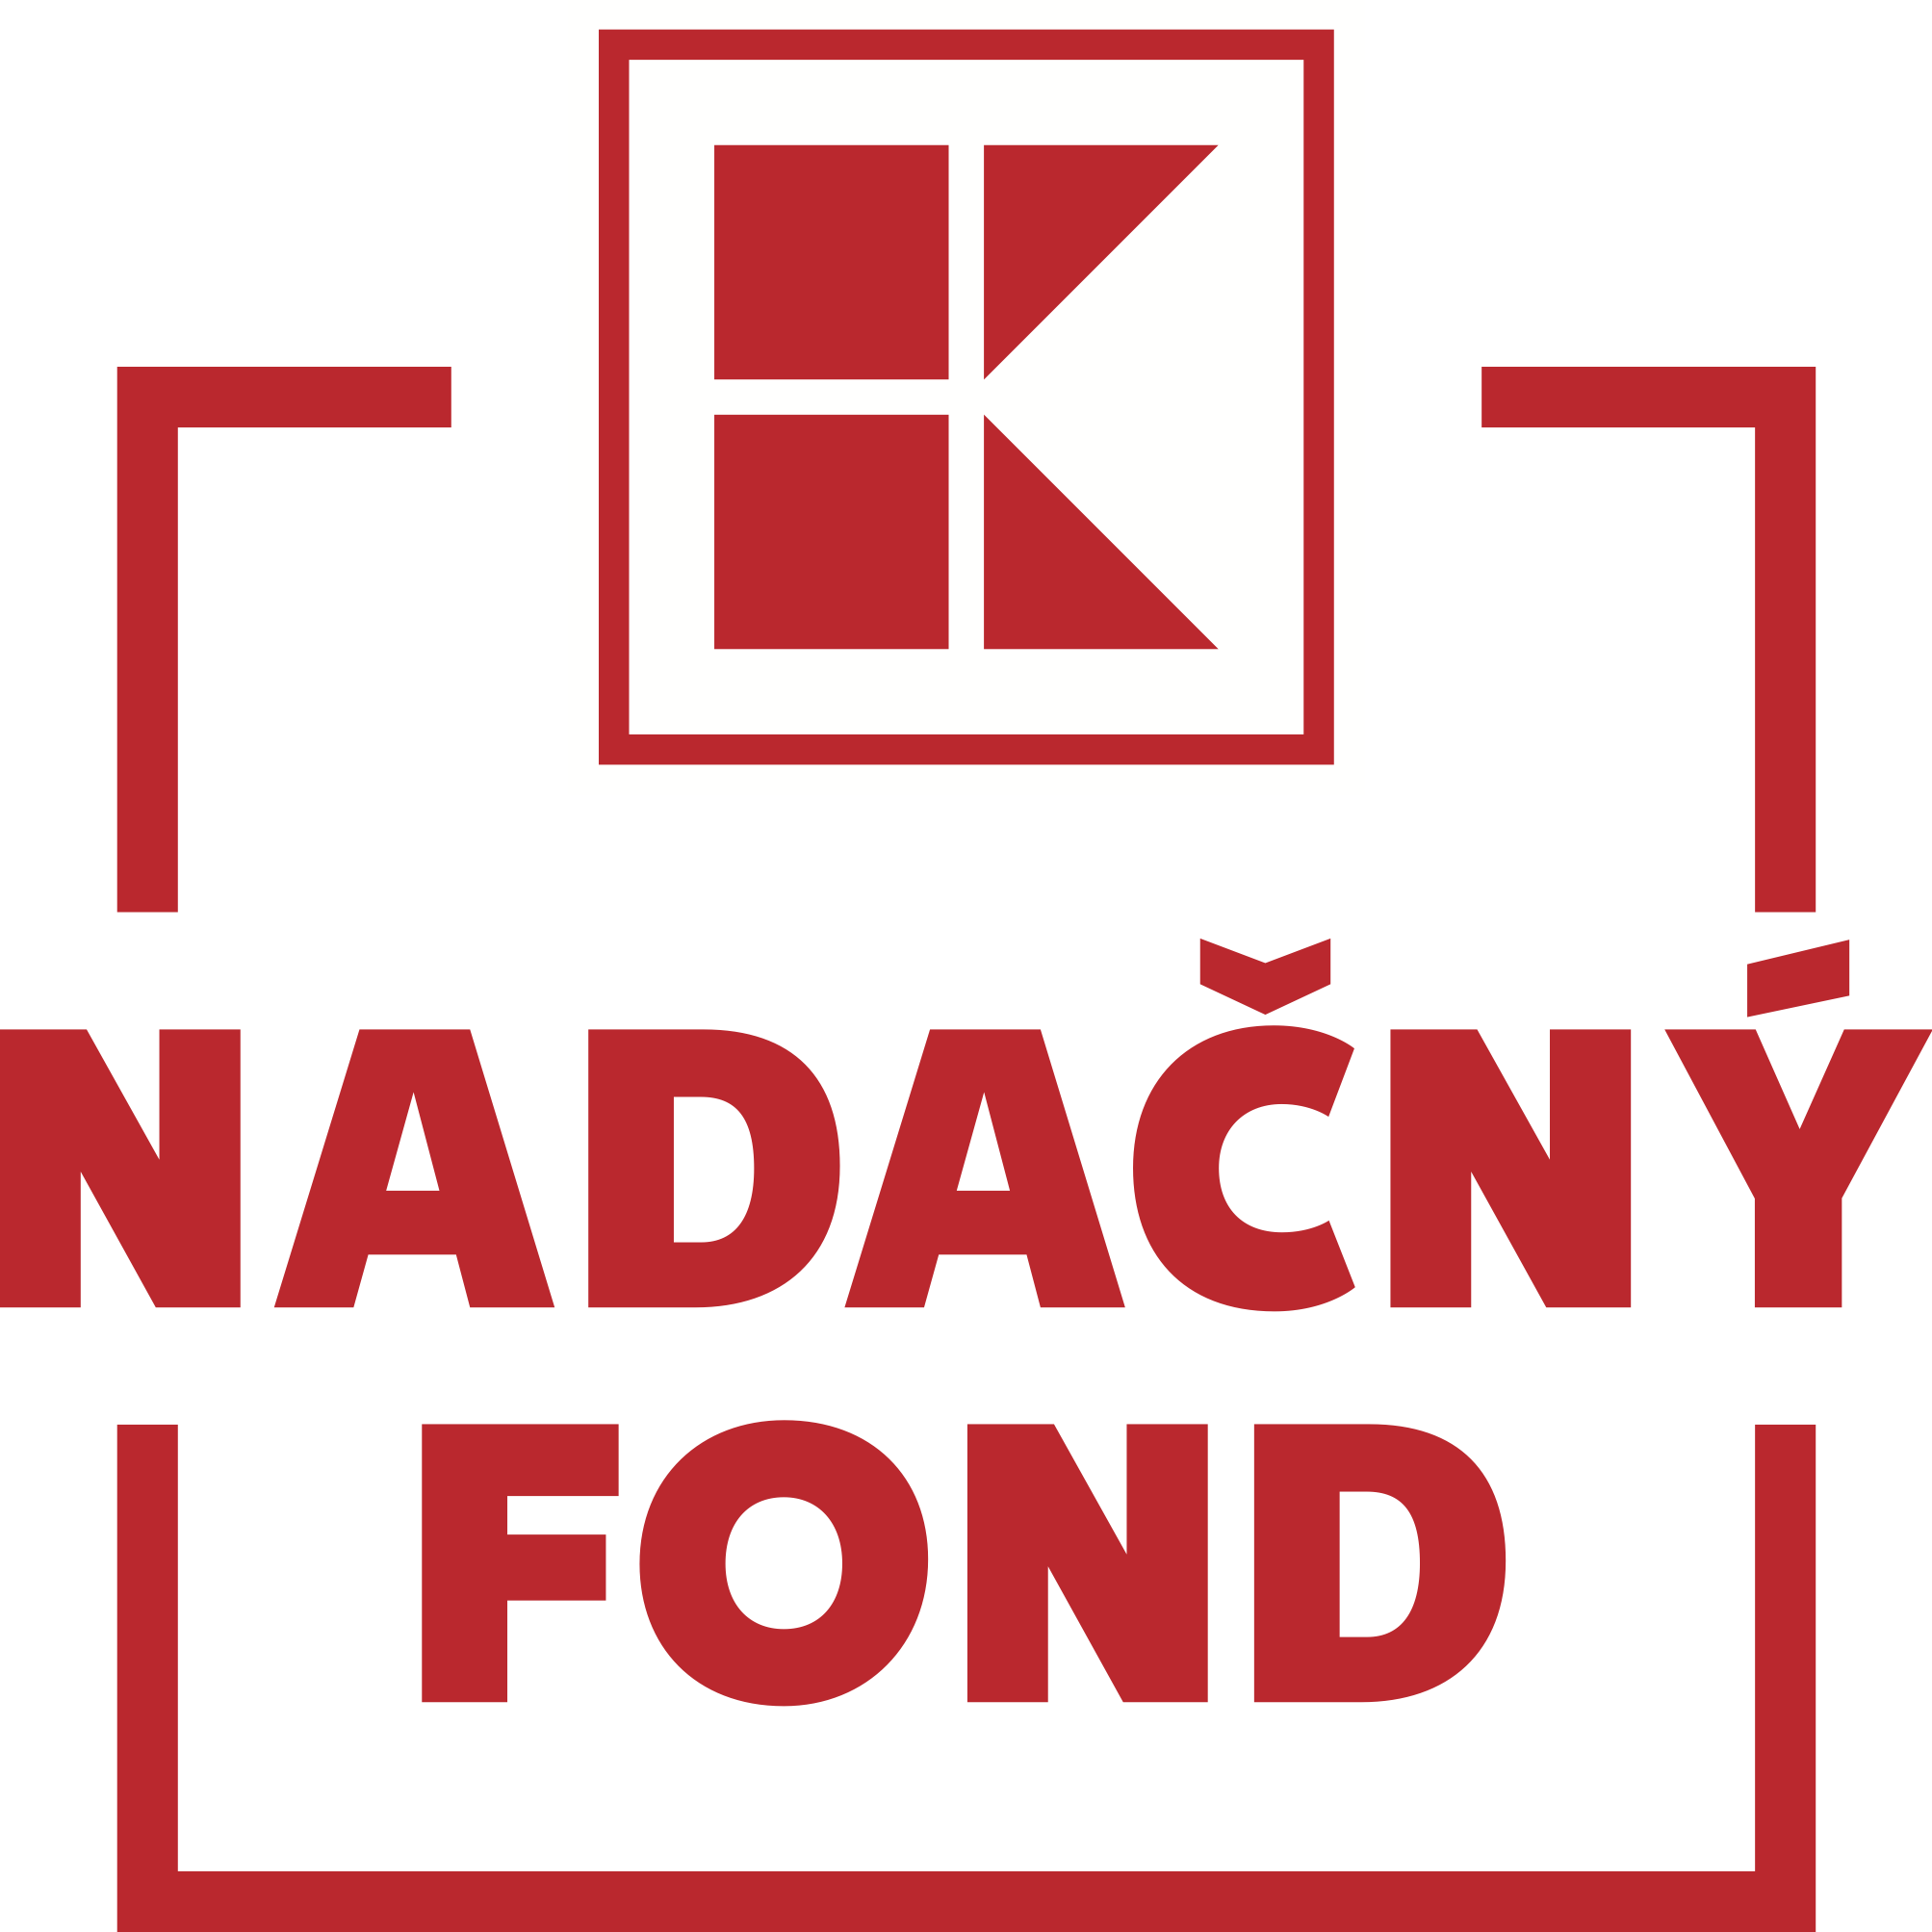 KL Nadacny fond Logo CMYK